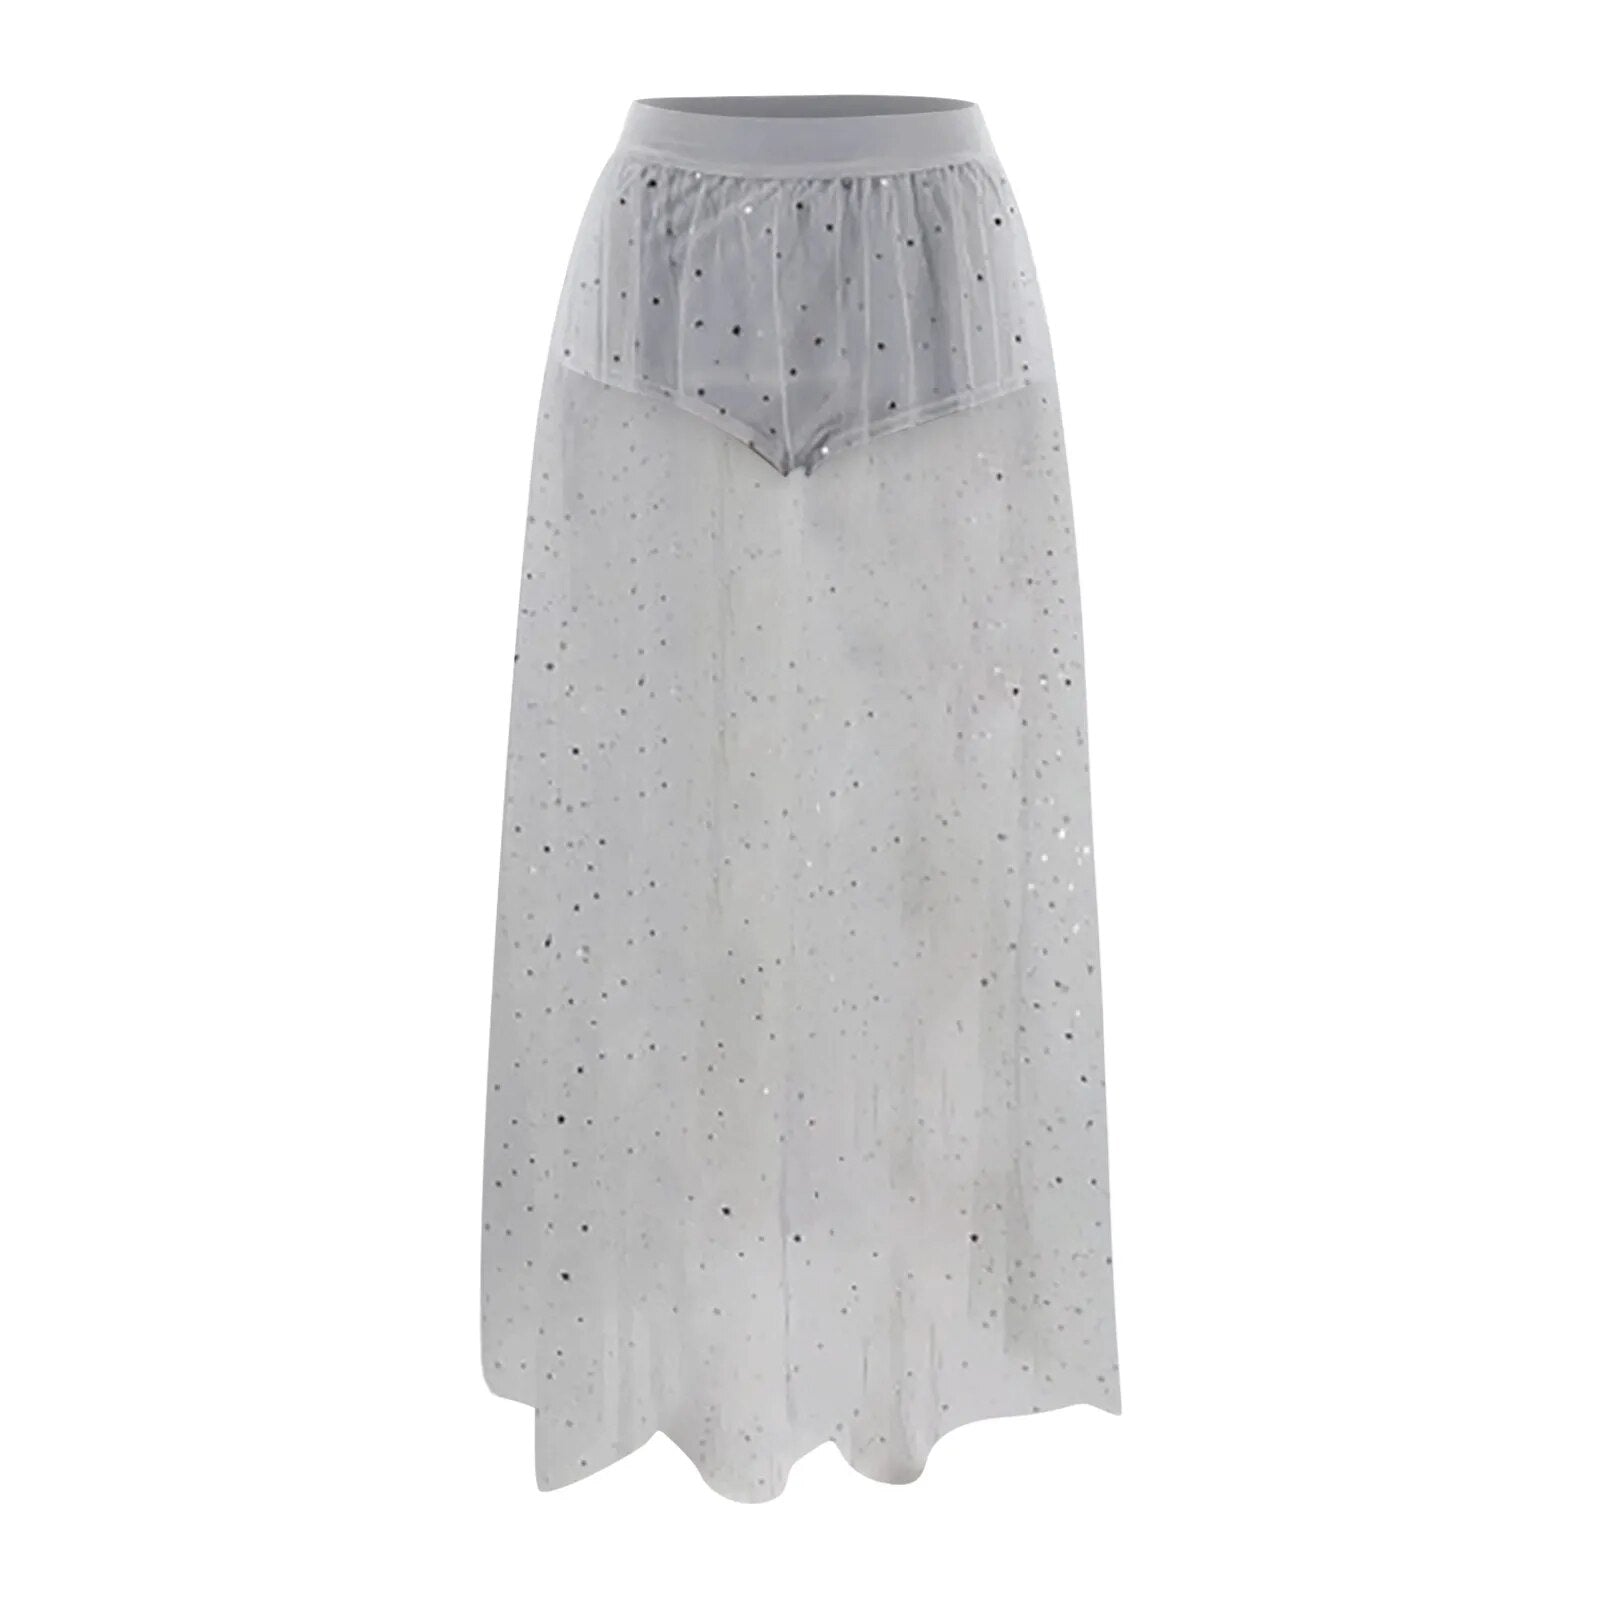 TEEK - Mesh High Waist Galaxy Skirt SKIRT theteekdotcom White S 